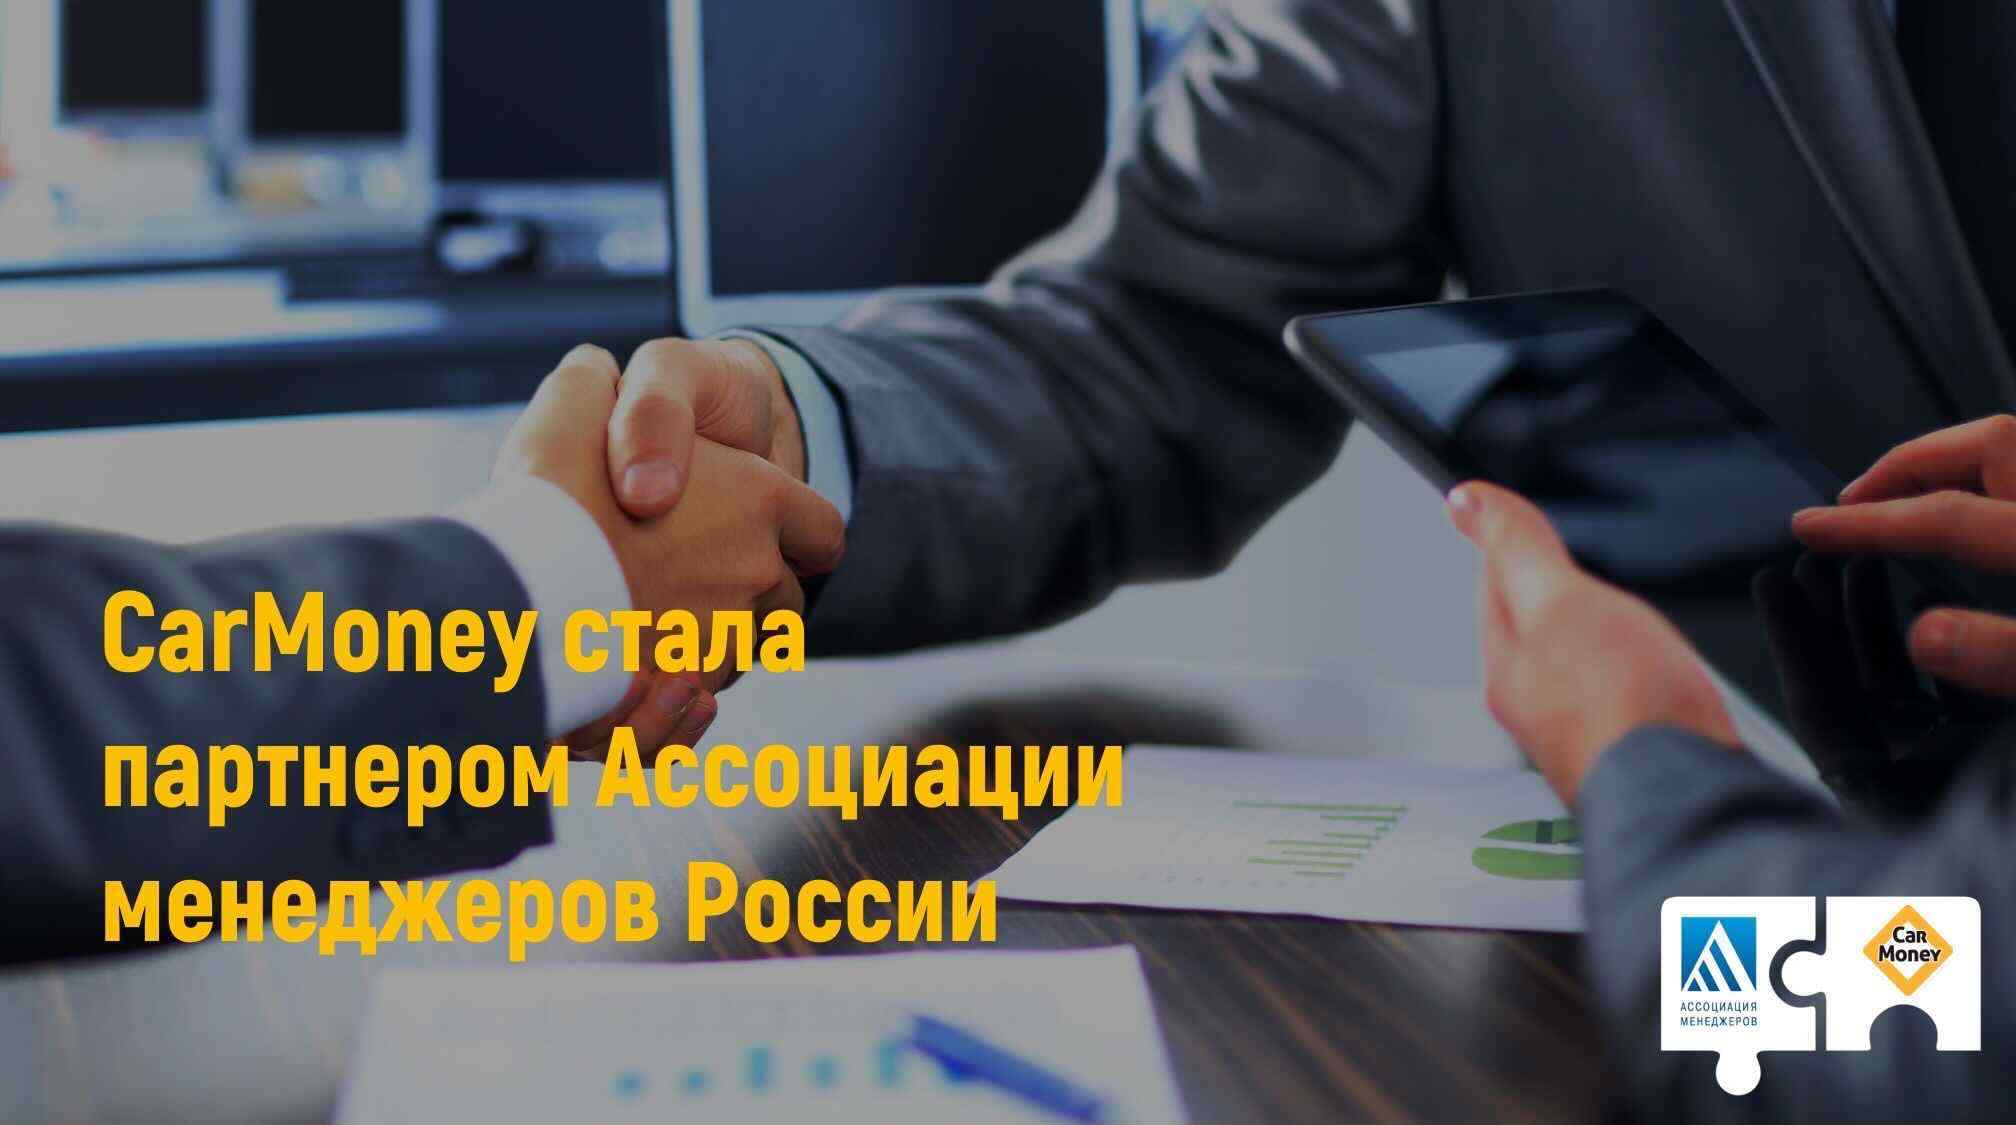 Иллюстрация к странице carMoney стала партнером Ассоциации менеджеров России на сайте МФО CarMoney - выдача займа под залог